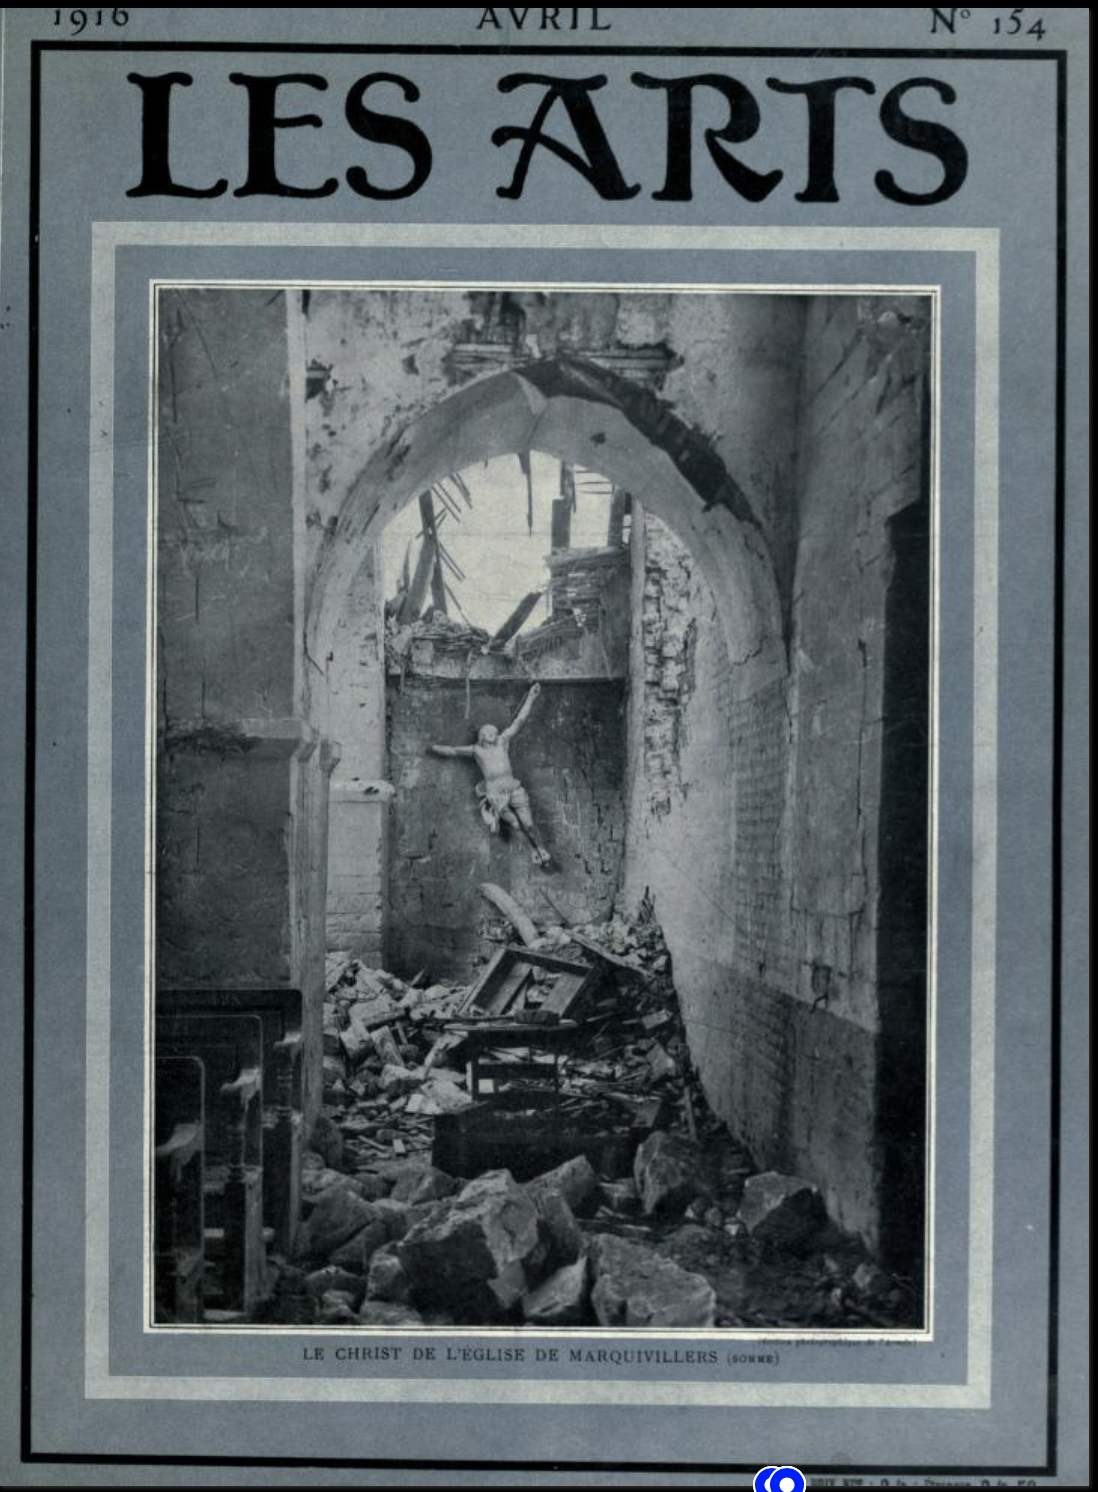 Les Arts, avril 1916 (Copy)